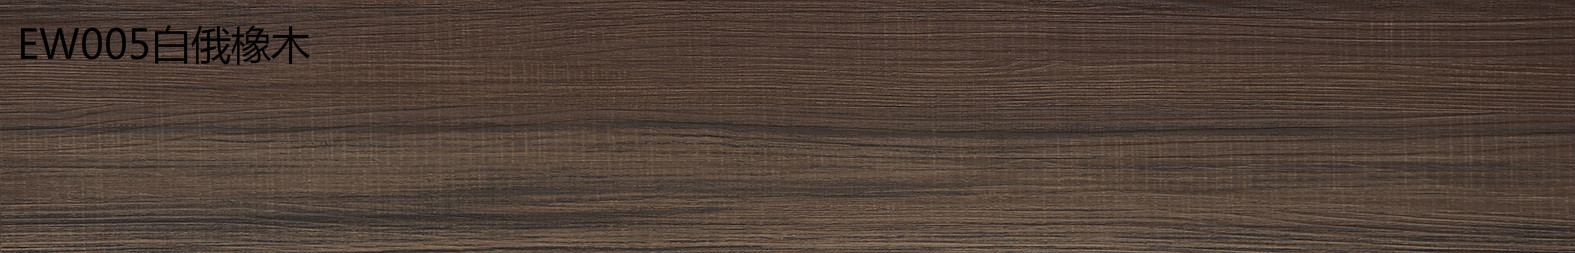 金鼠PVC地板木纹EW005